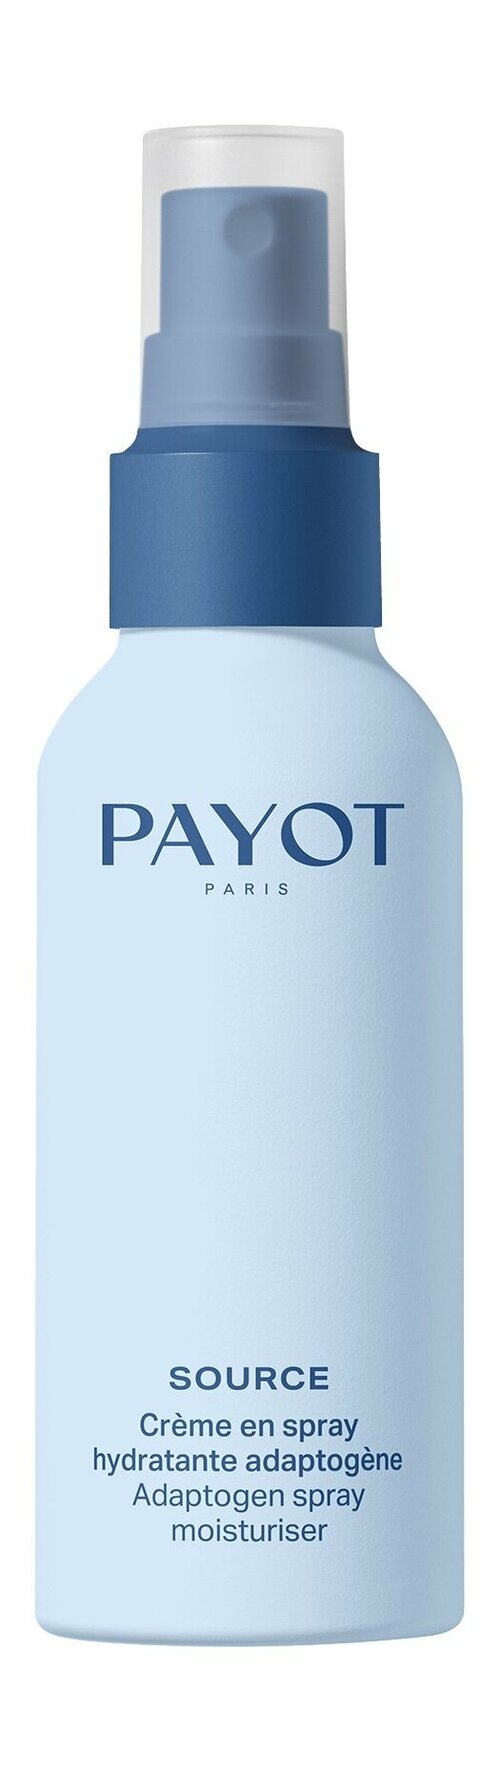 PAYOT Source Crème en Spray Hydratante Adaptogene Спрей для лица увлажняющий, 40 мл